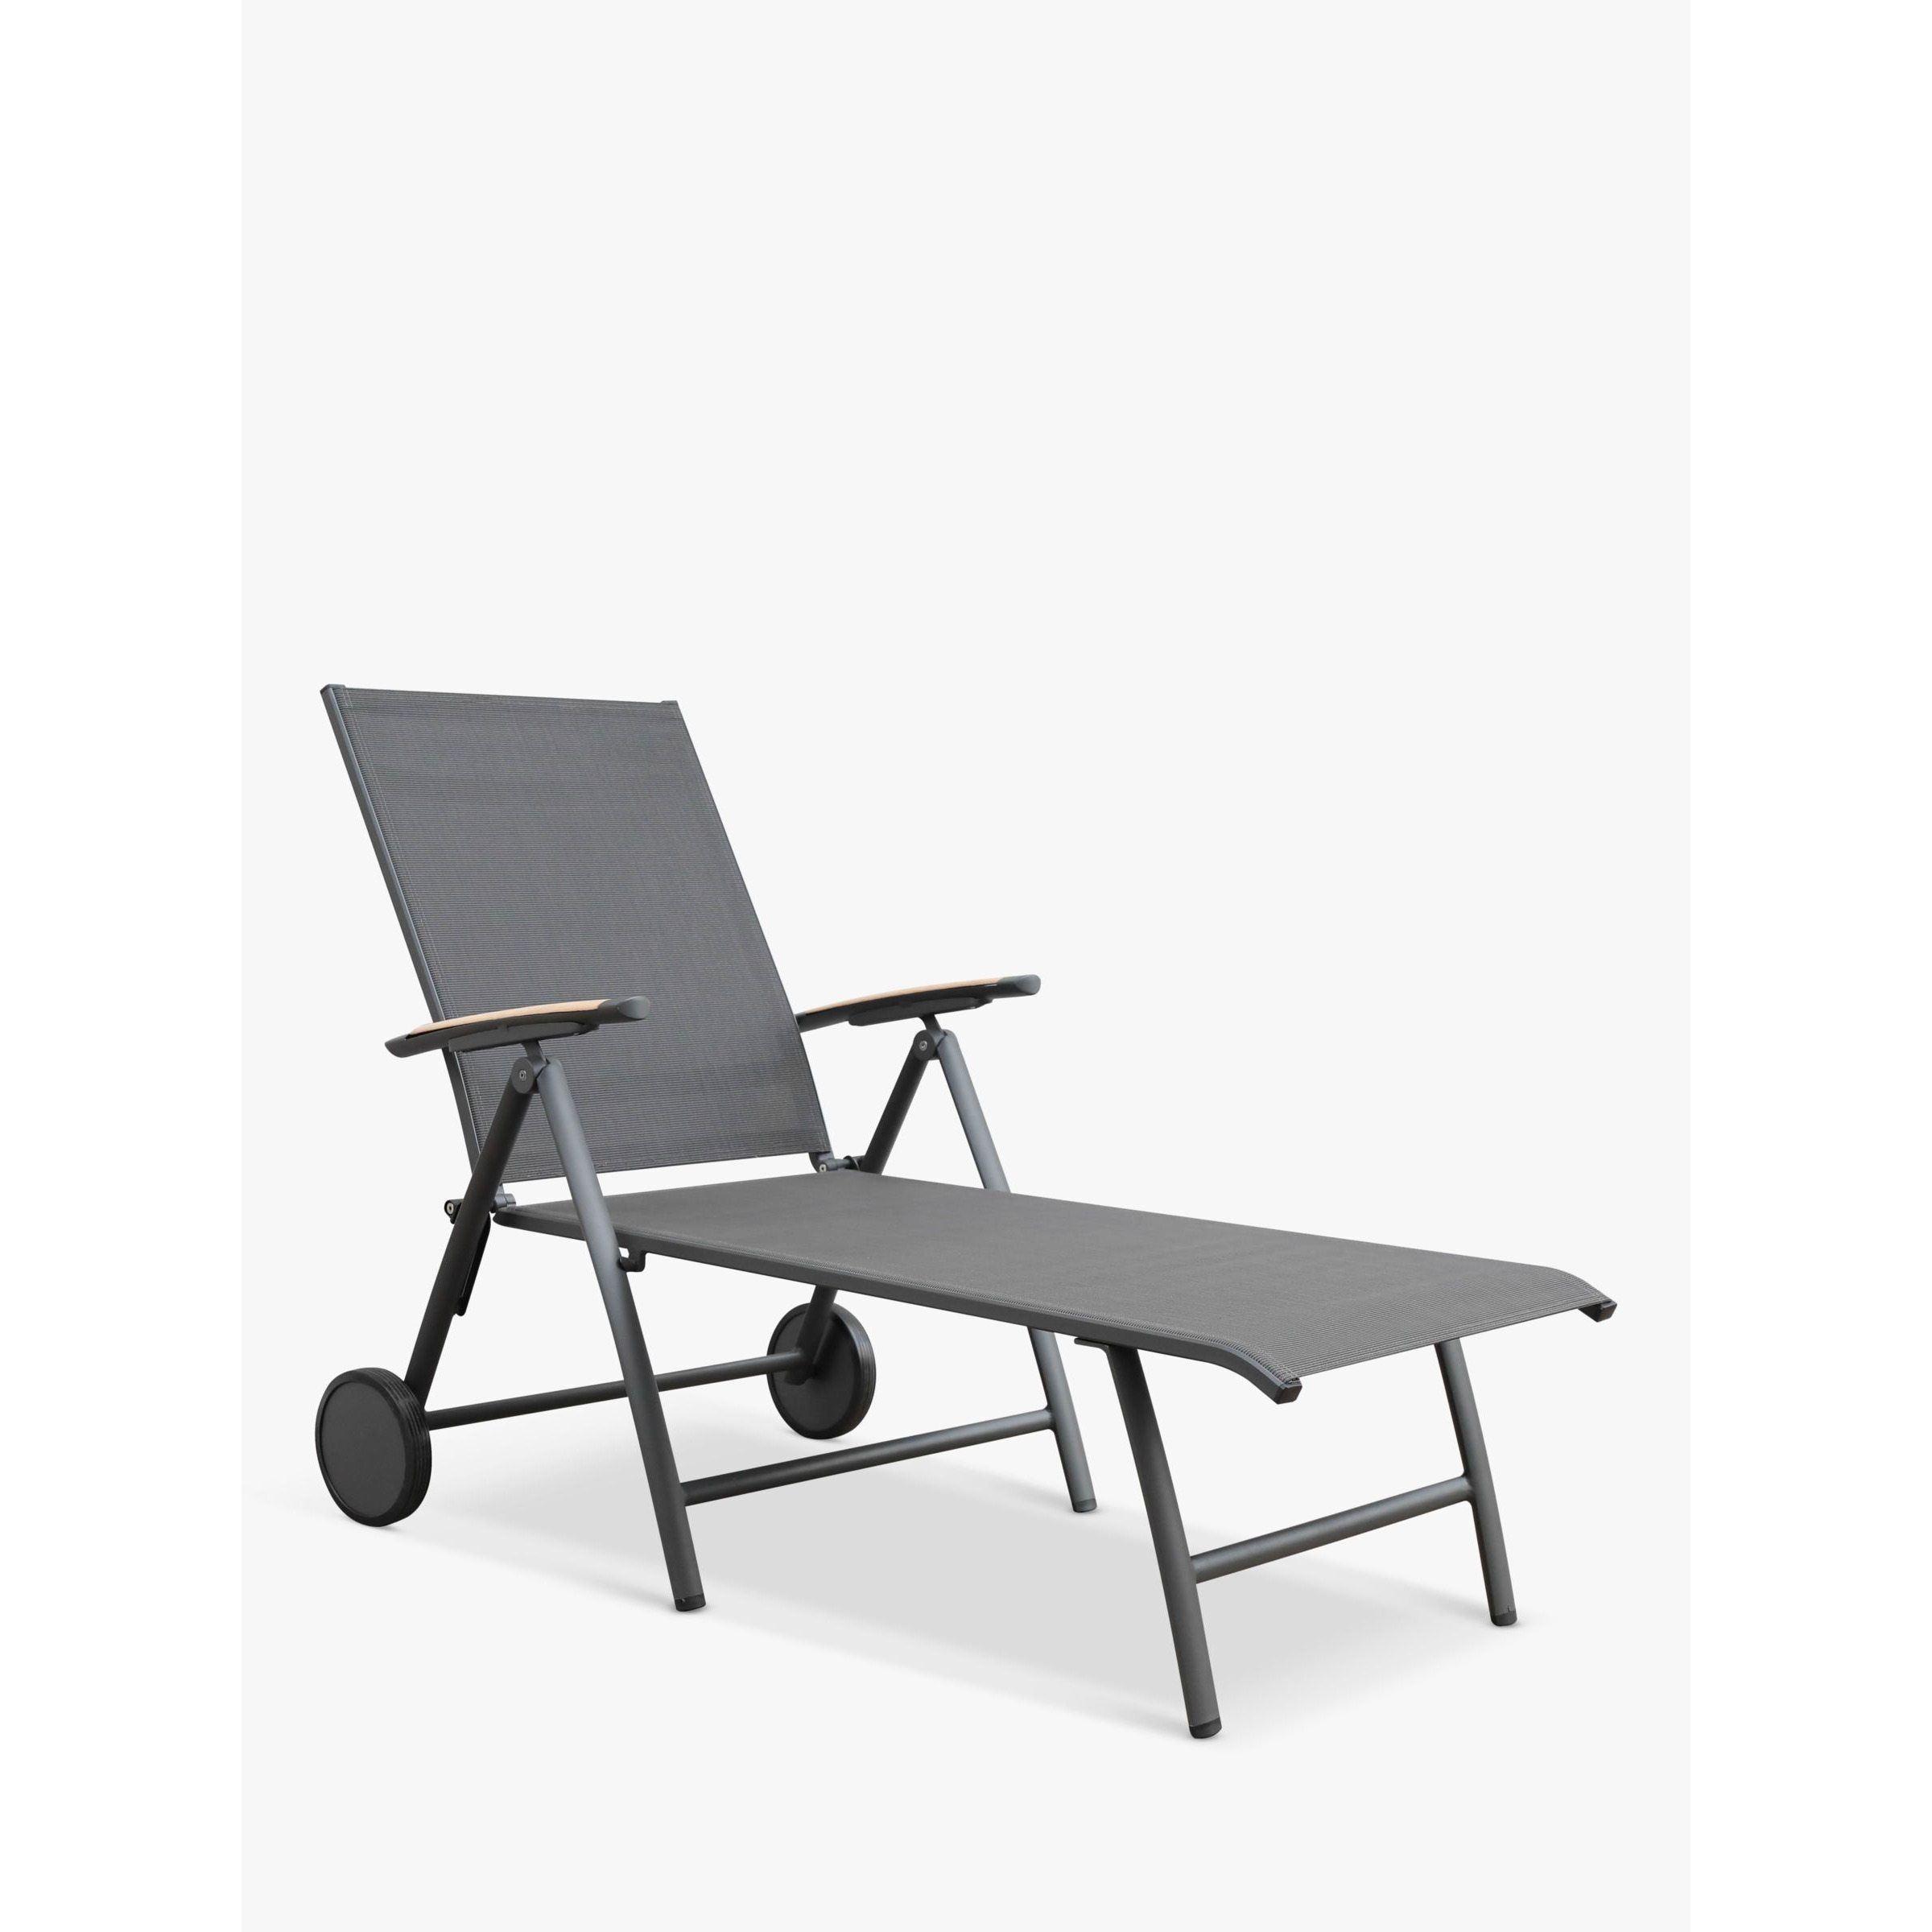 KETTLER Surf Active Folding Adjustable Sun Lounger with Teak Wood Armrests, Grey - image 1